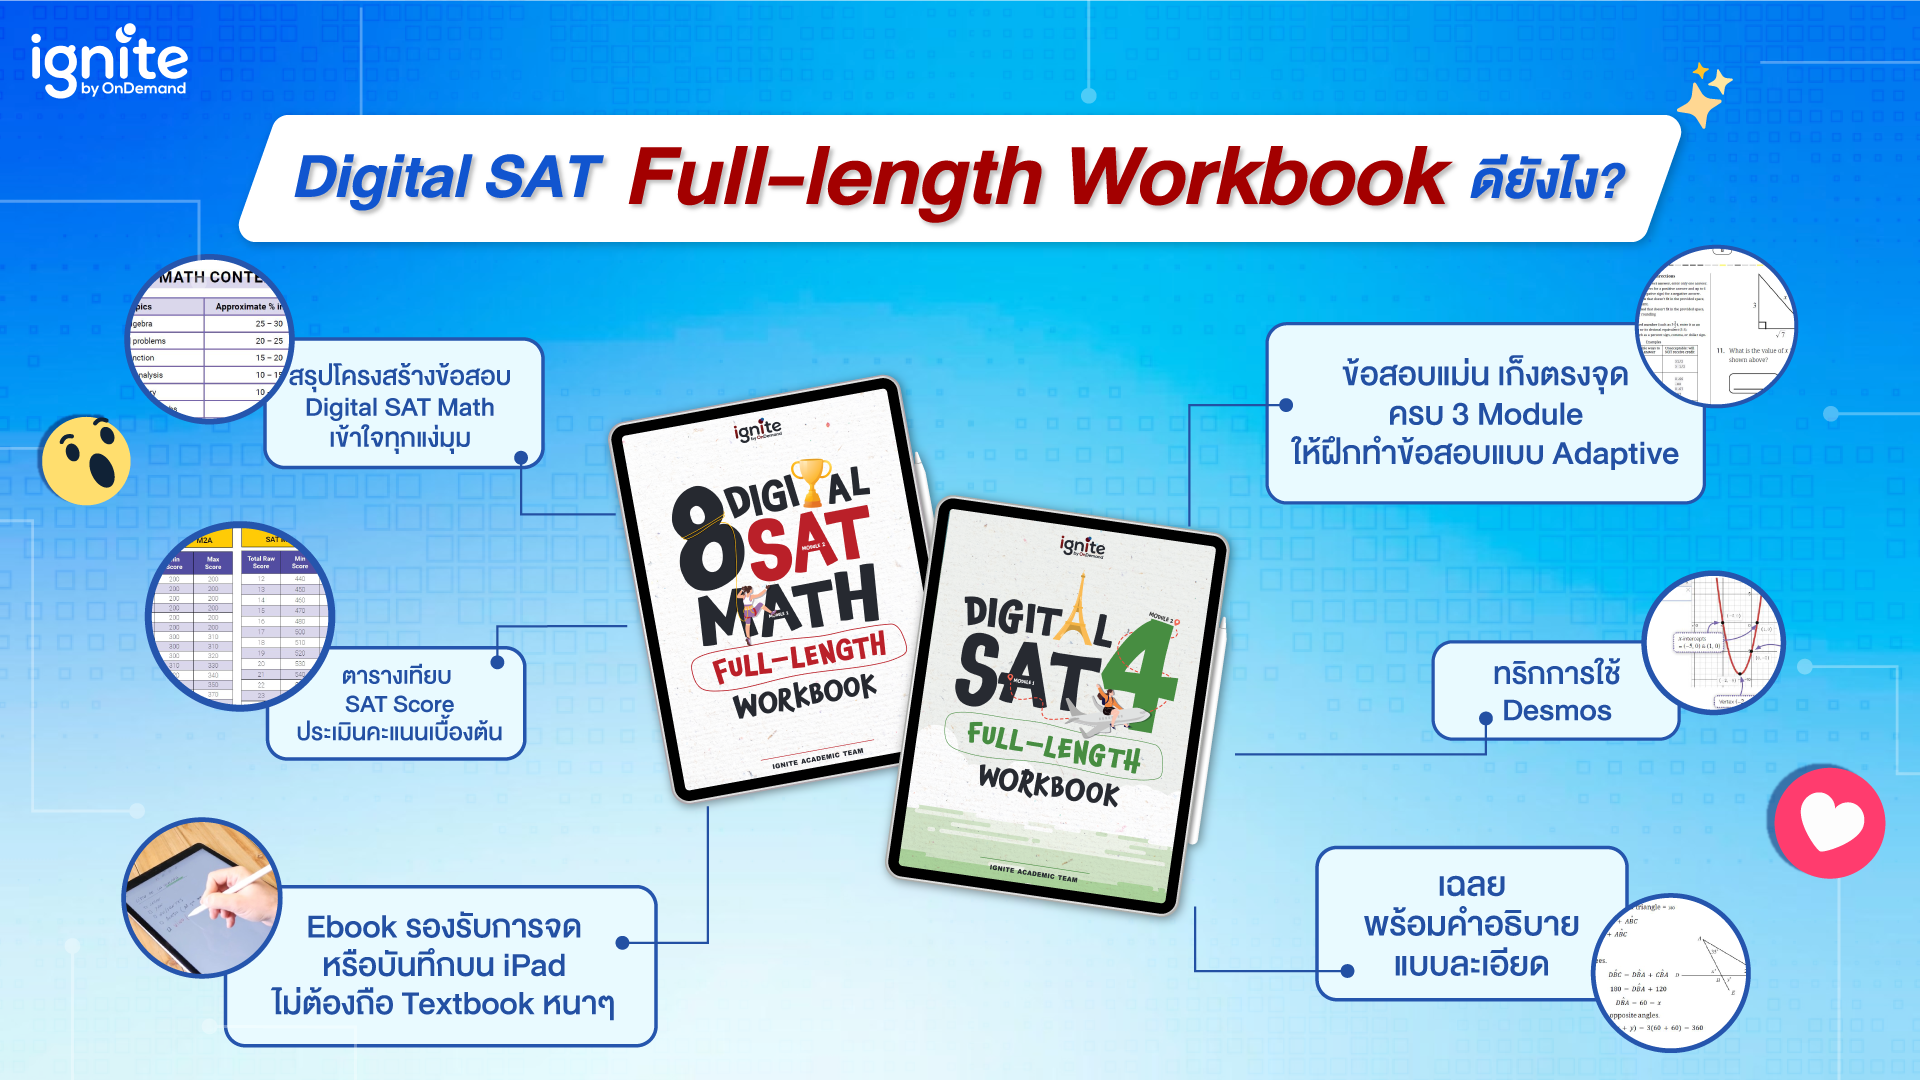 Digital SAT Full-length Workbook - Digital SAT Self Pracetice - igntie by OnDemand